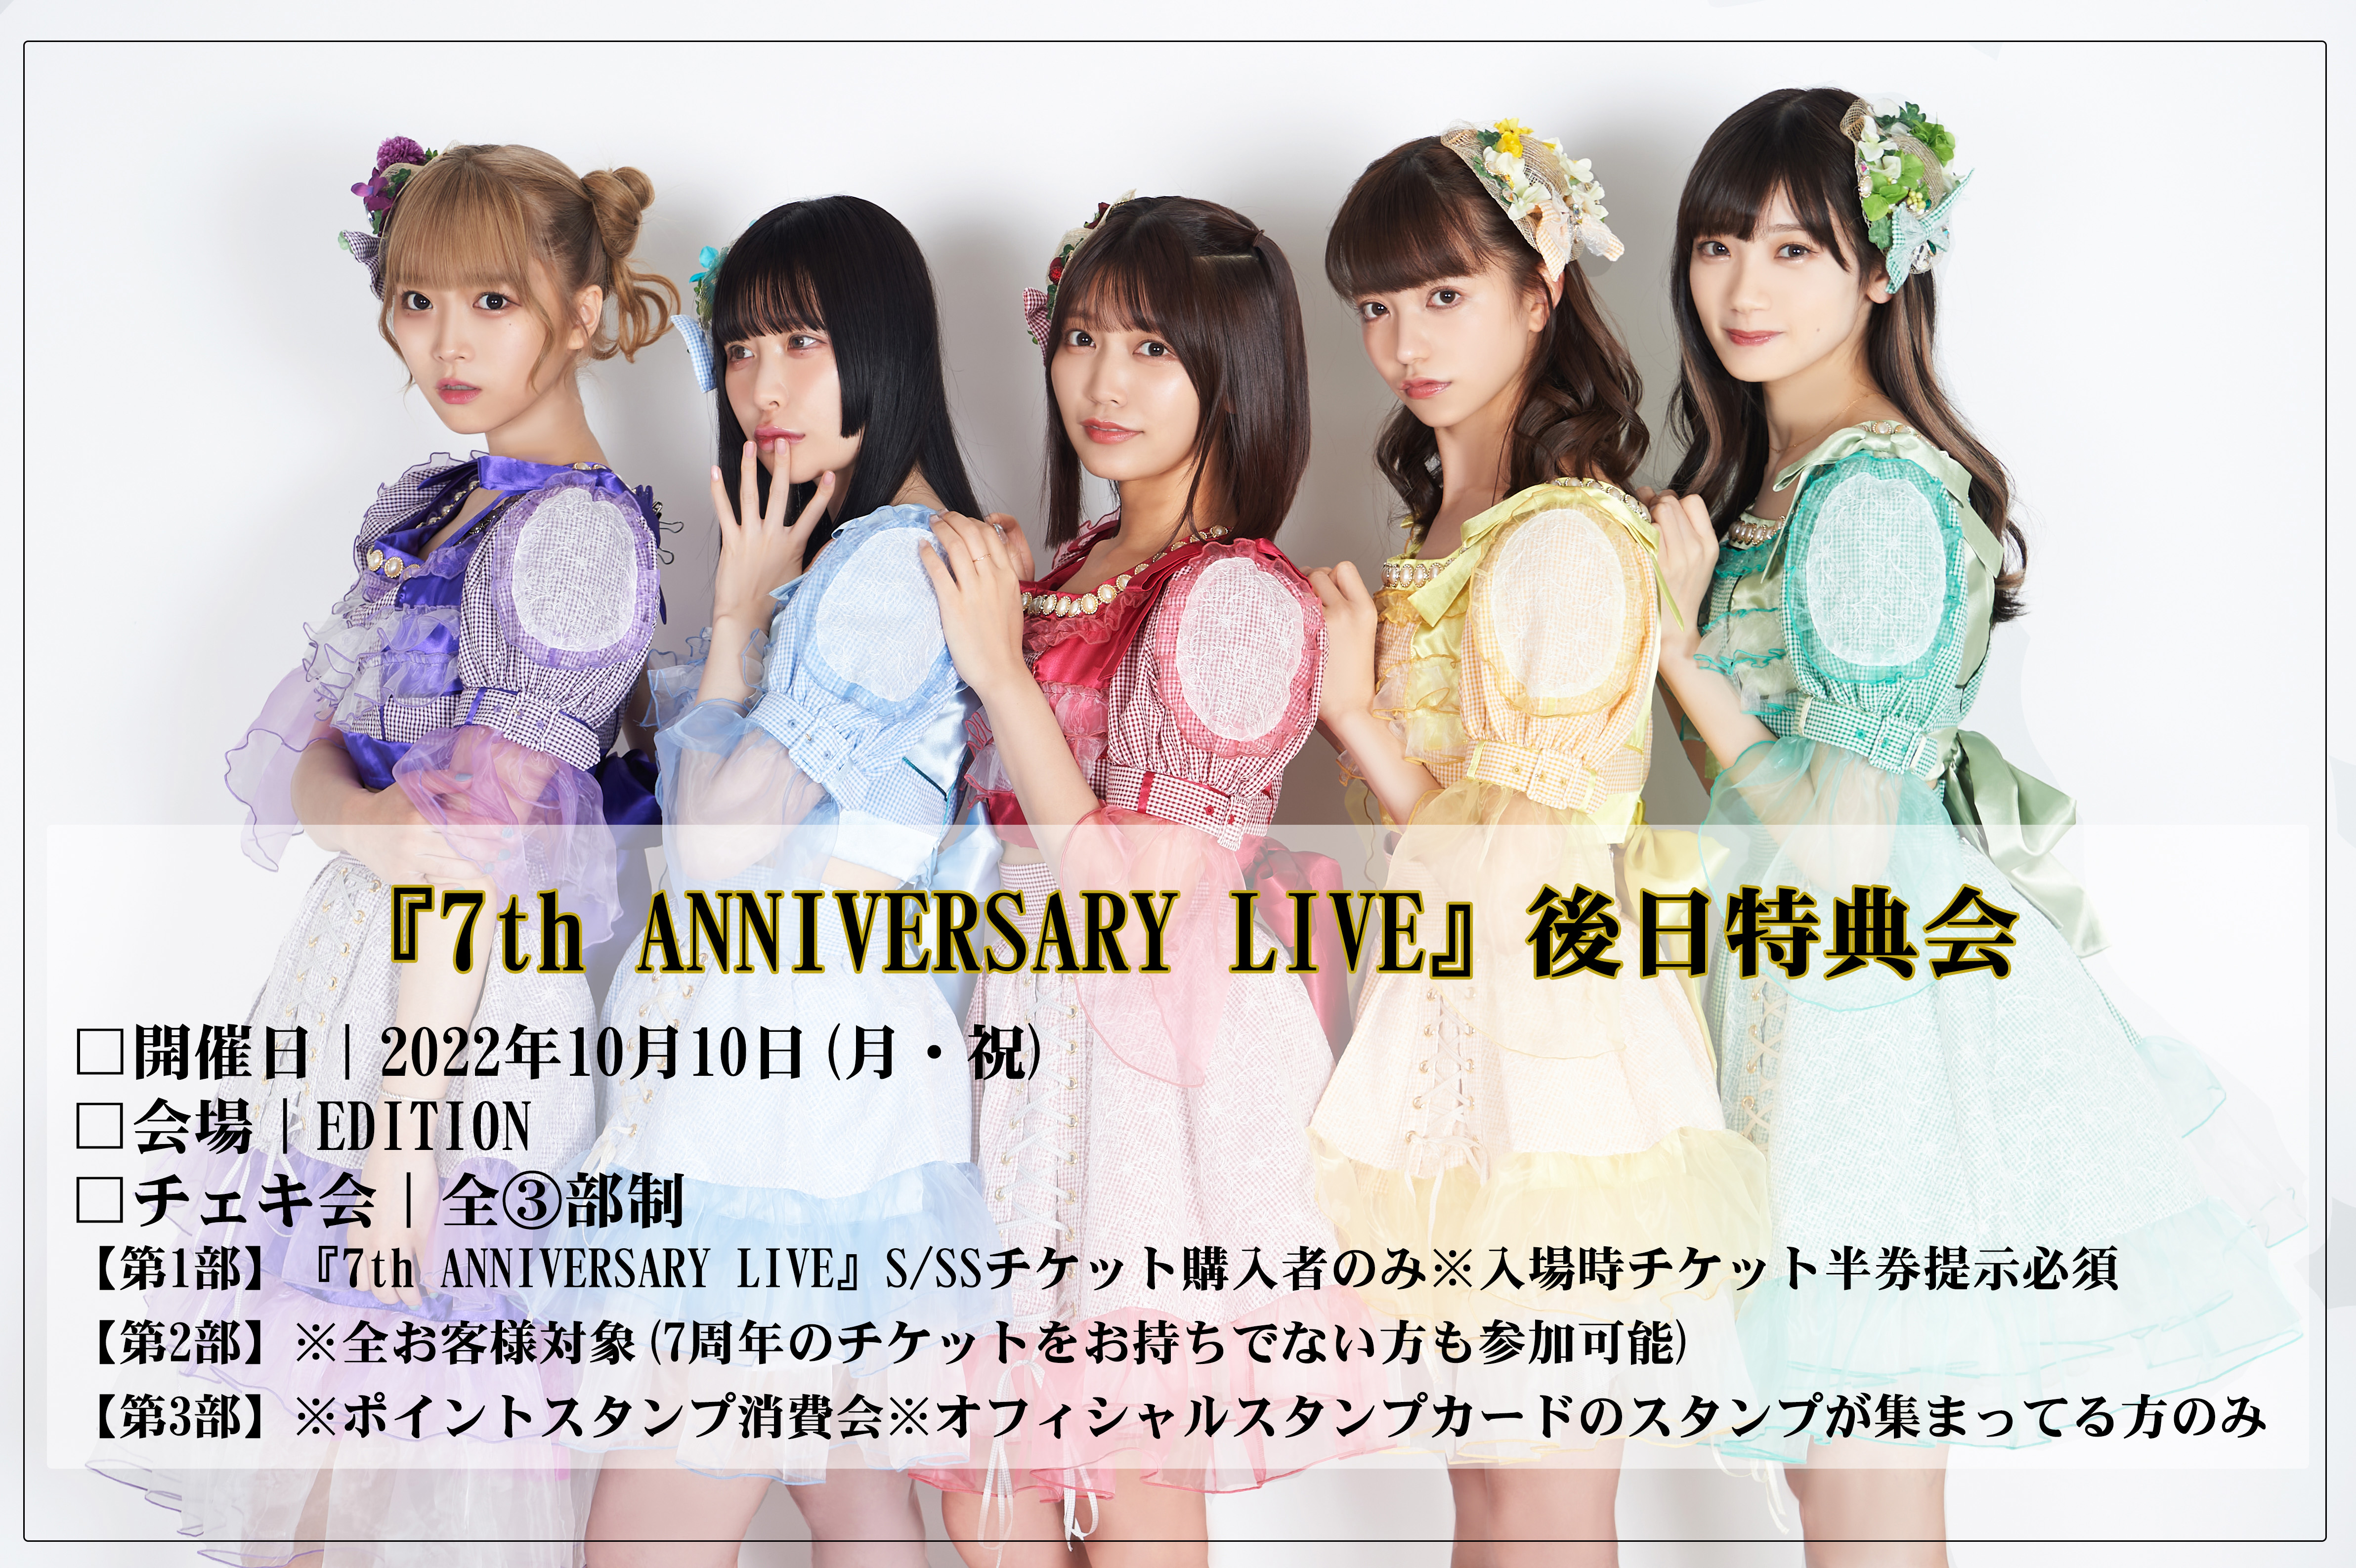 【１部】2022年10月10日(月・祝)『7th ANNIVERSARY LIVE』後日特典会